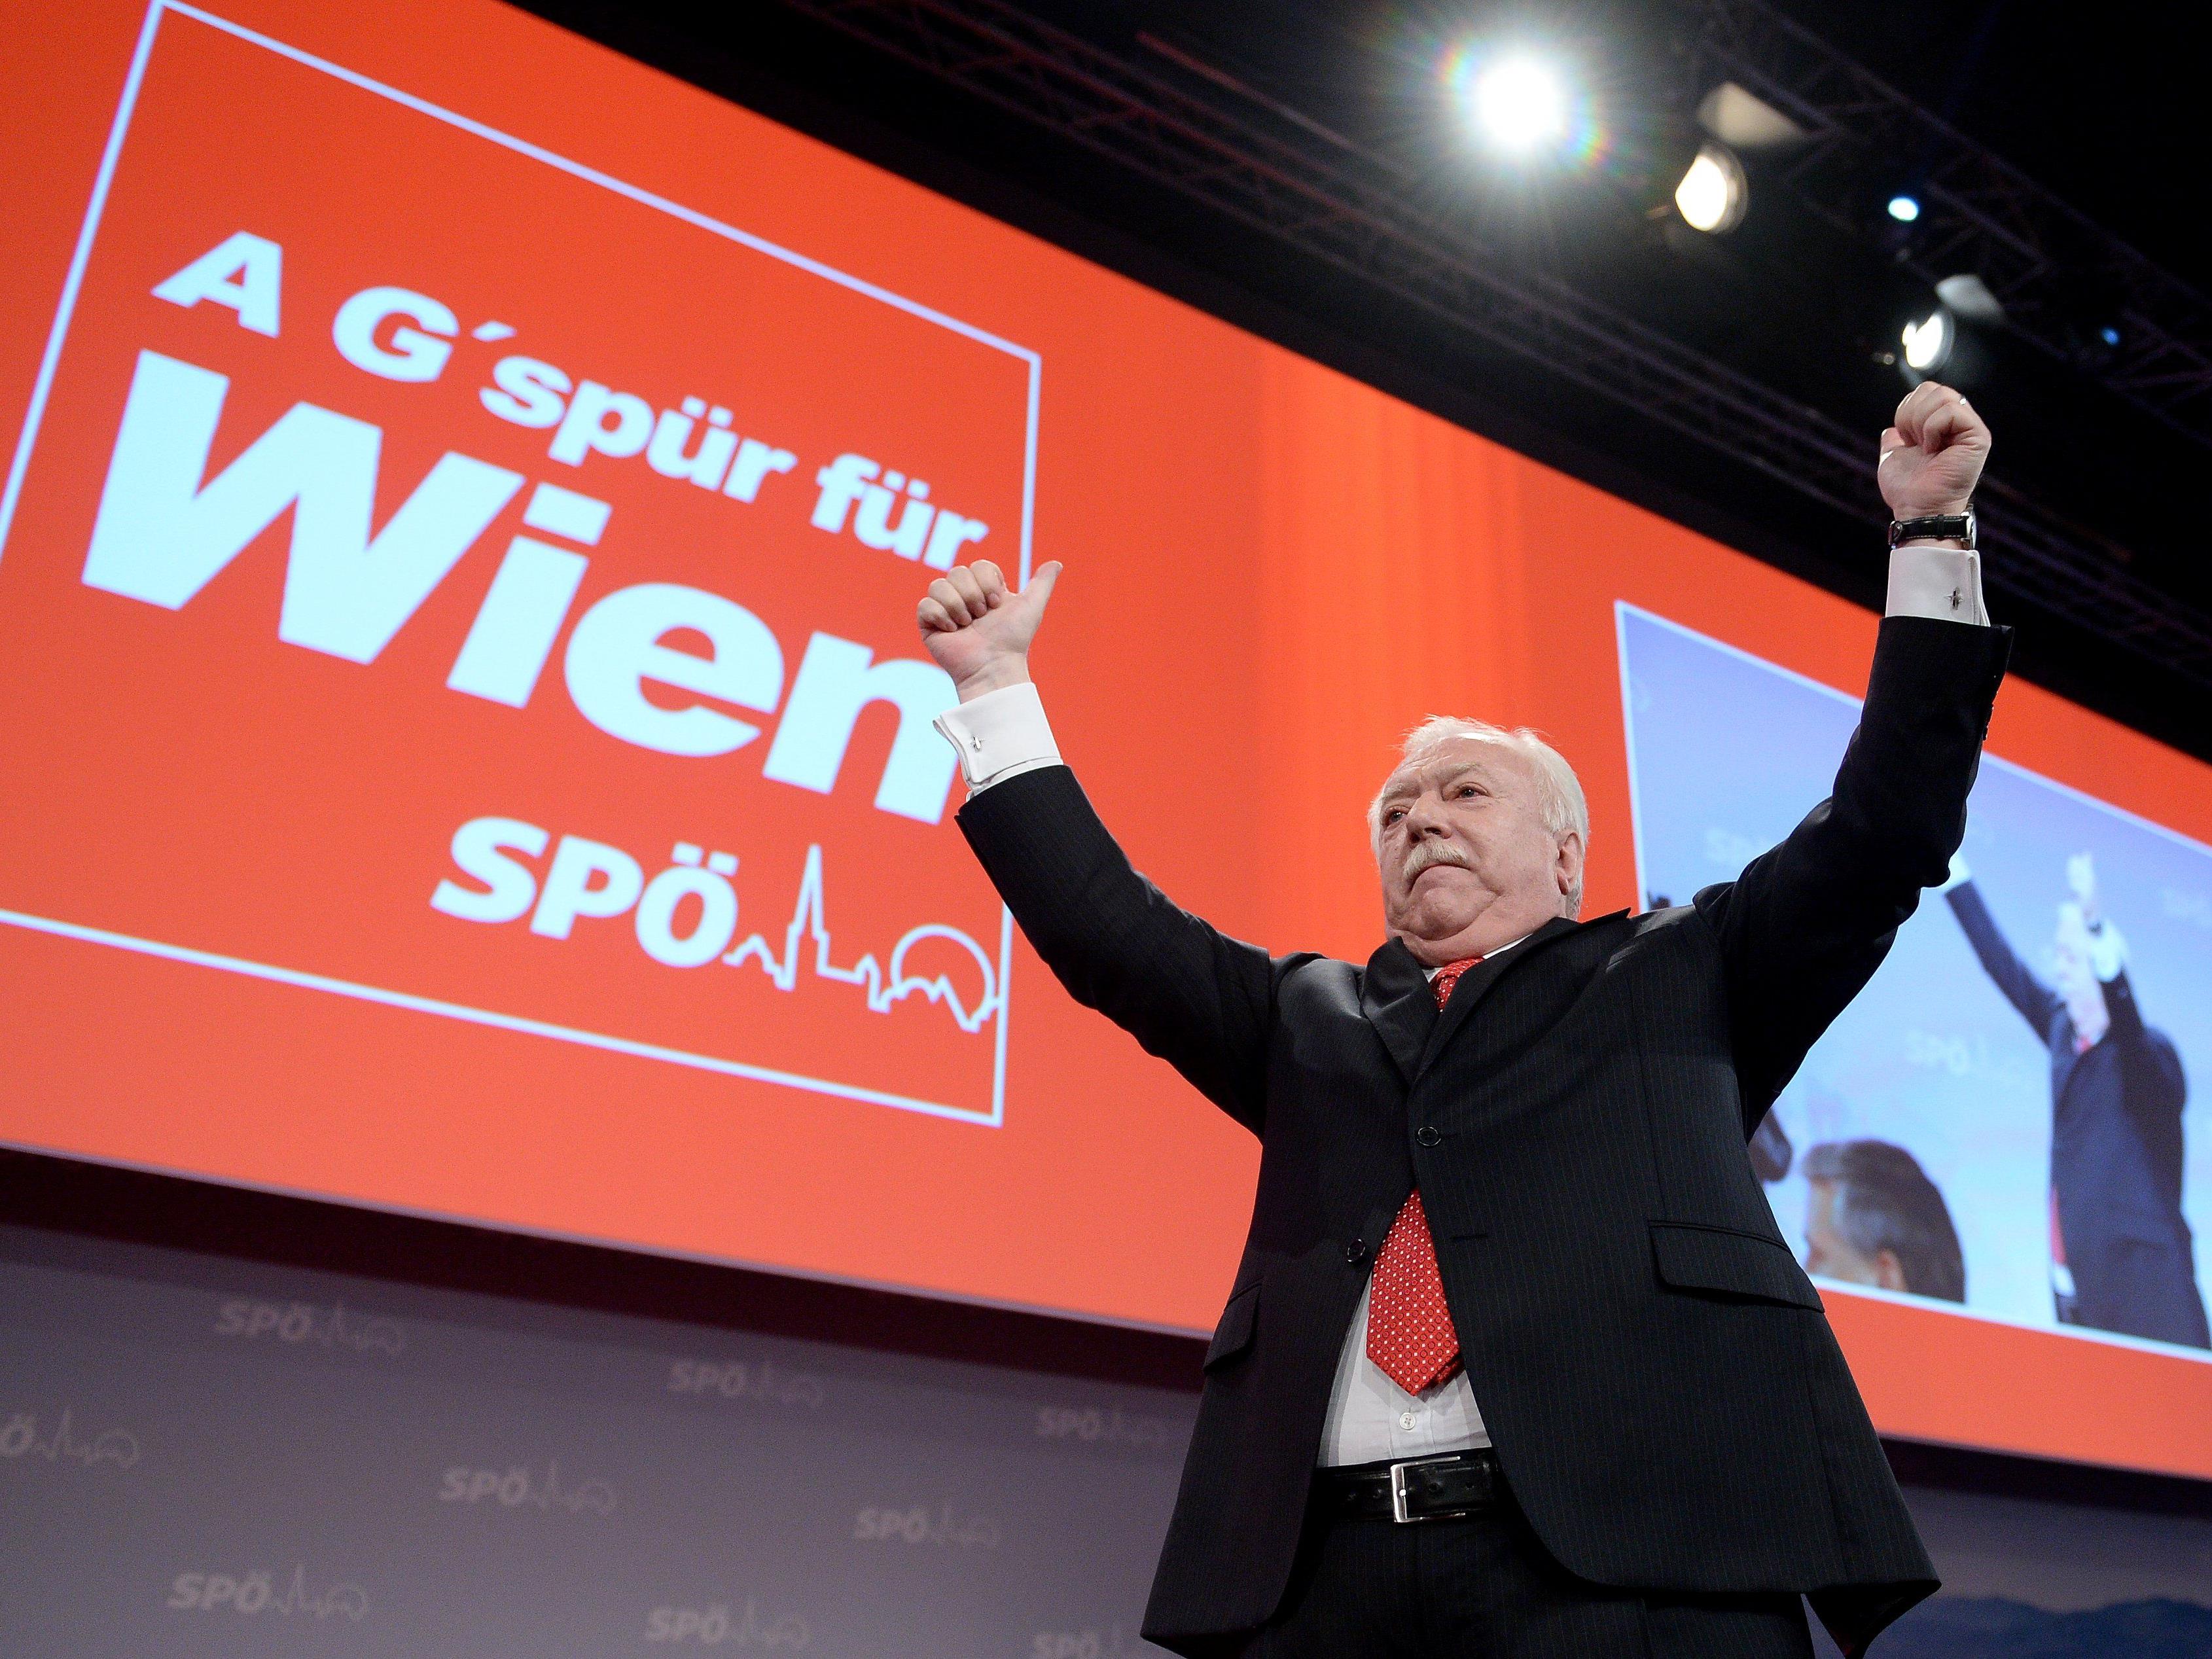 Wird Michael Häupl erneut zum Wiener Bürgermeister gewählt?